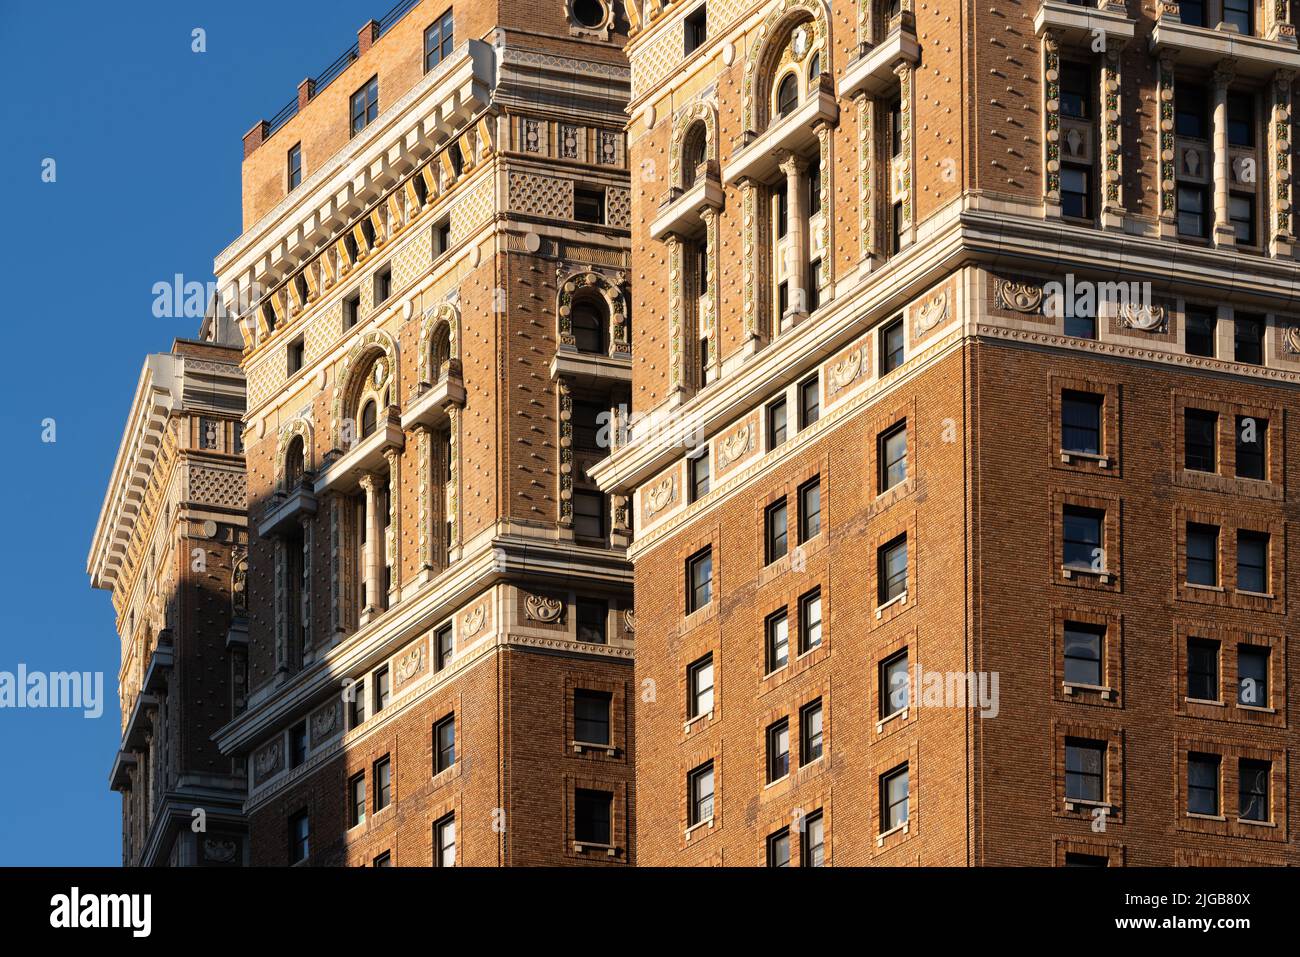 Detalle arquitectónico de un edificio Midtown de la pre-guerra al atardecer. Manhattan, Nueva York Foto de stock